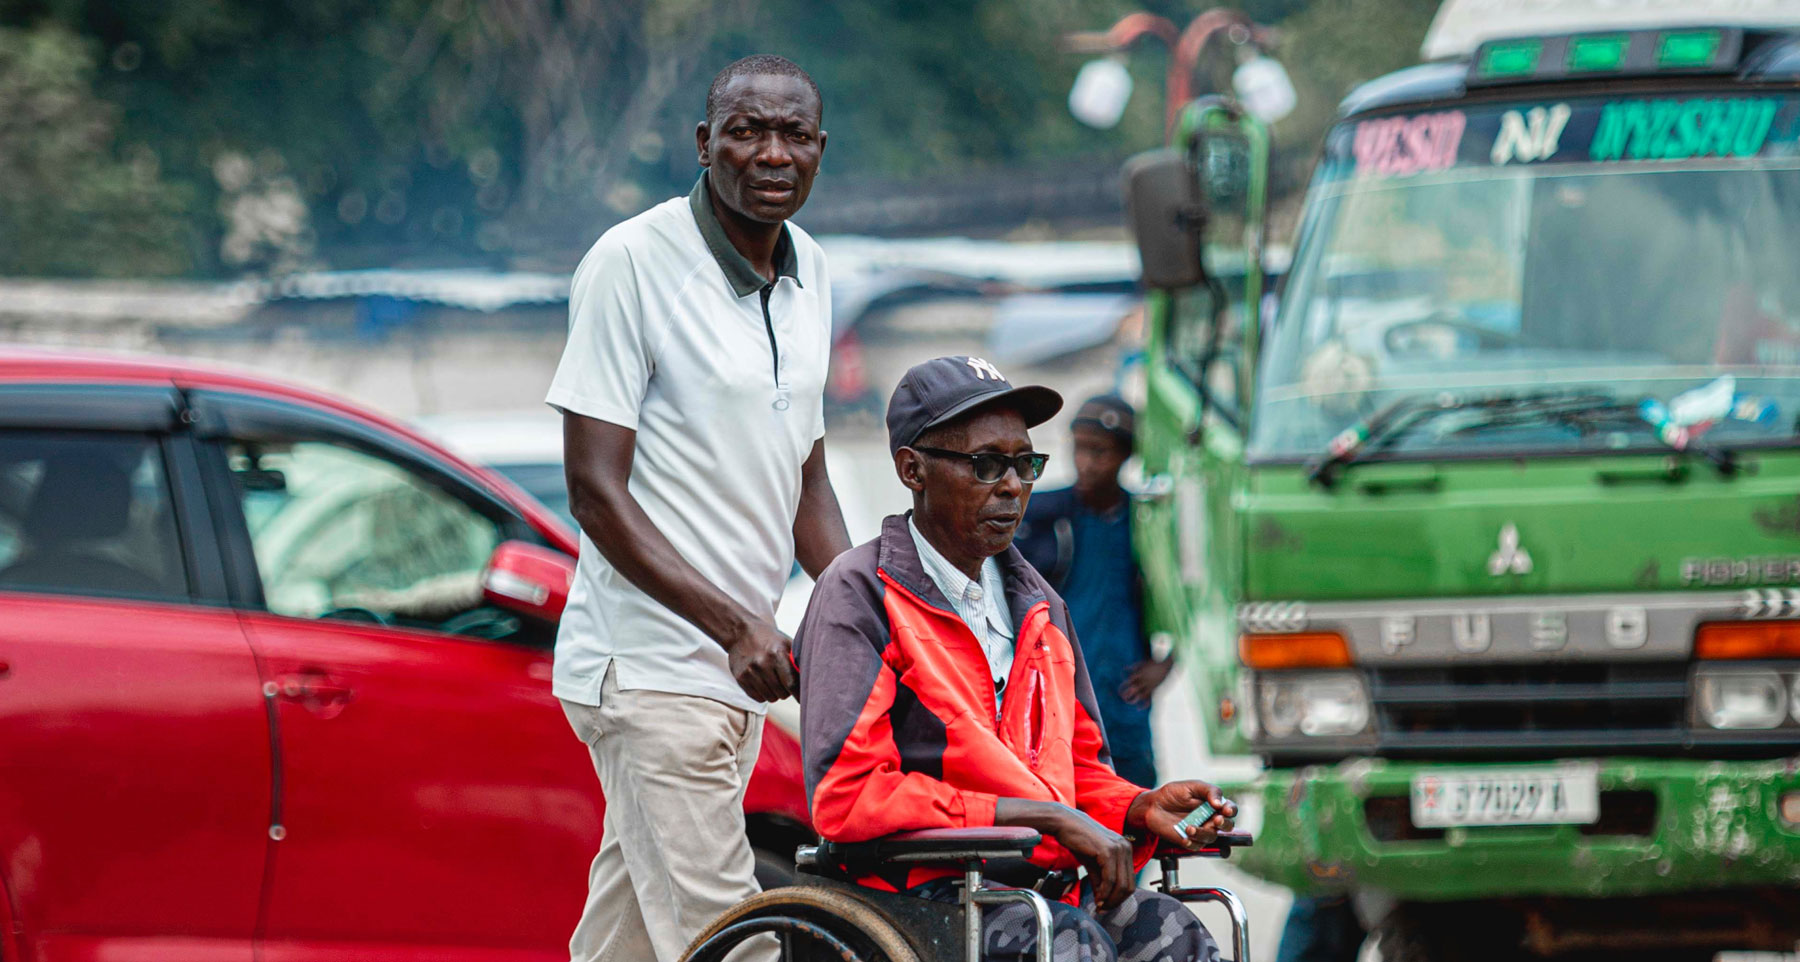 Rehabilitationszentrum für Menschen mit körperlichen Behinderungen in Ongwediva